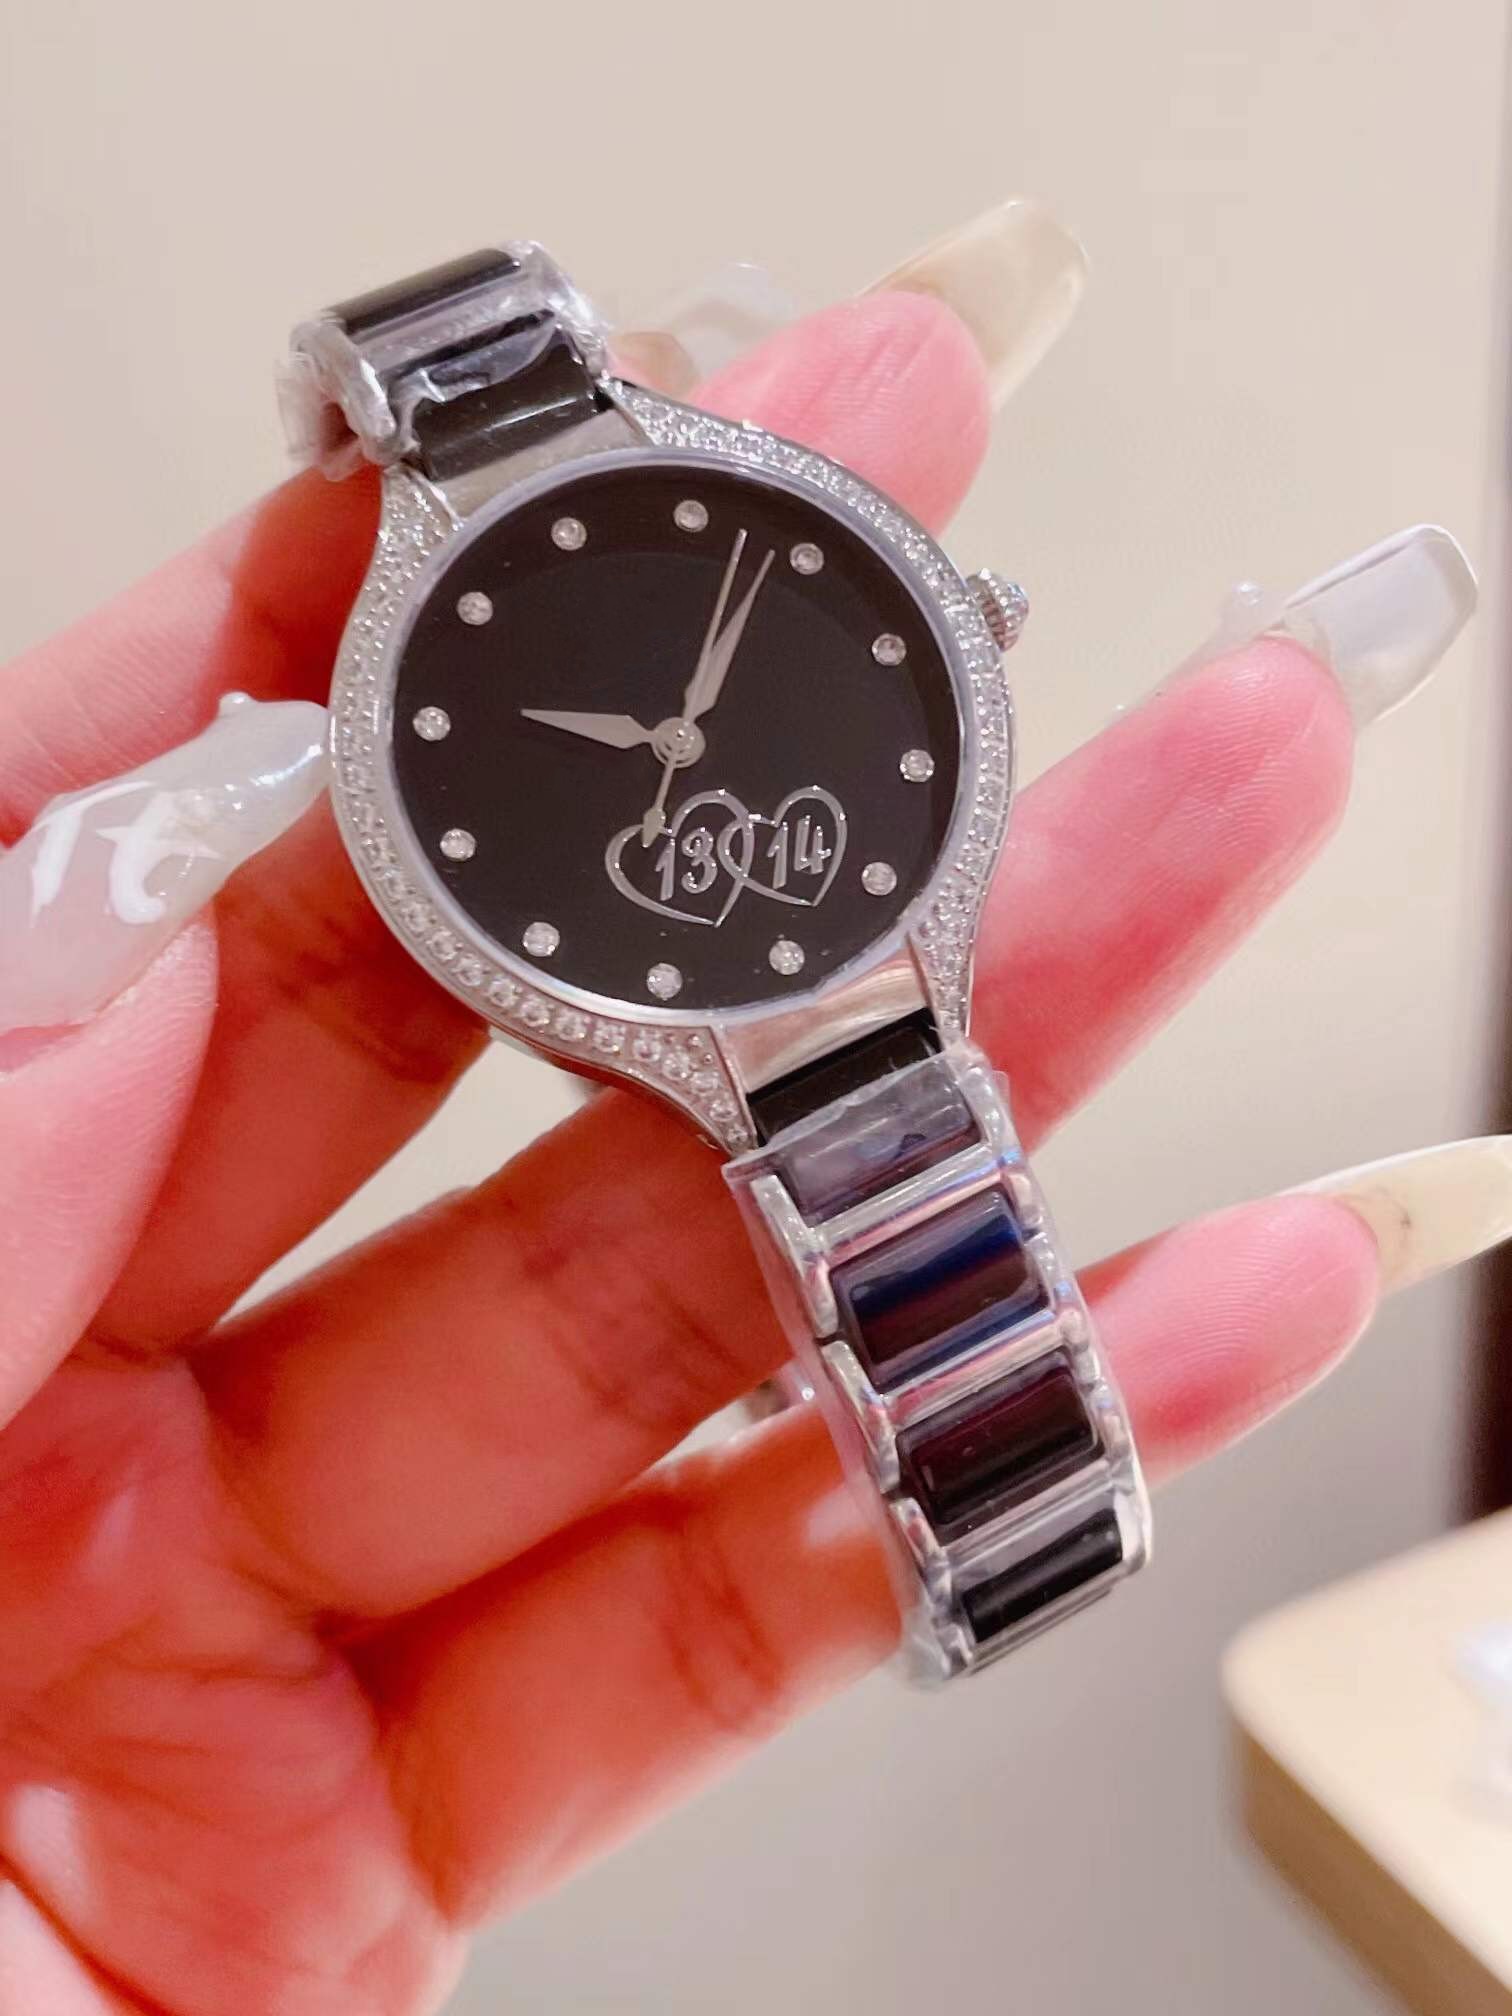 새로운 여성 쿼츠 숫자 시계 시계 기하학적 이중 하트 모양 시계 스테인리스 스틸 세라믹 스트랩 손목 손목 시계 지르콘 다이얼 여성 시계 30mm 방수